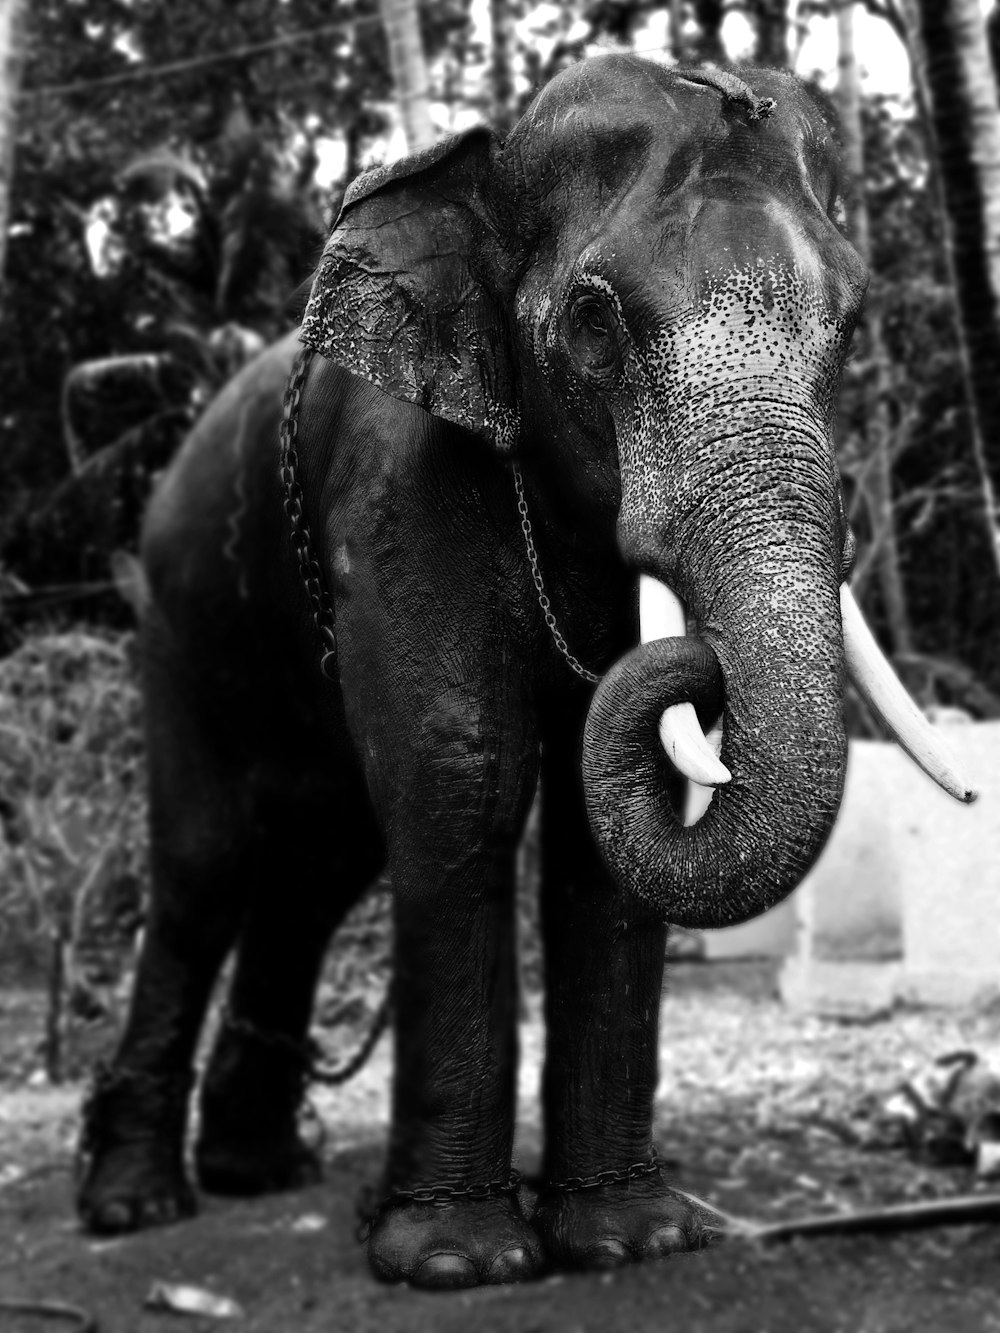 fotografia in scala di grigi di un elefante